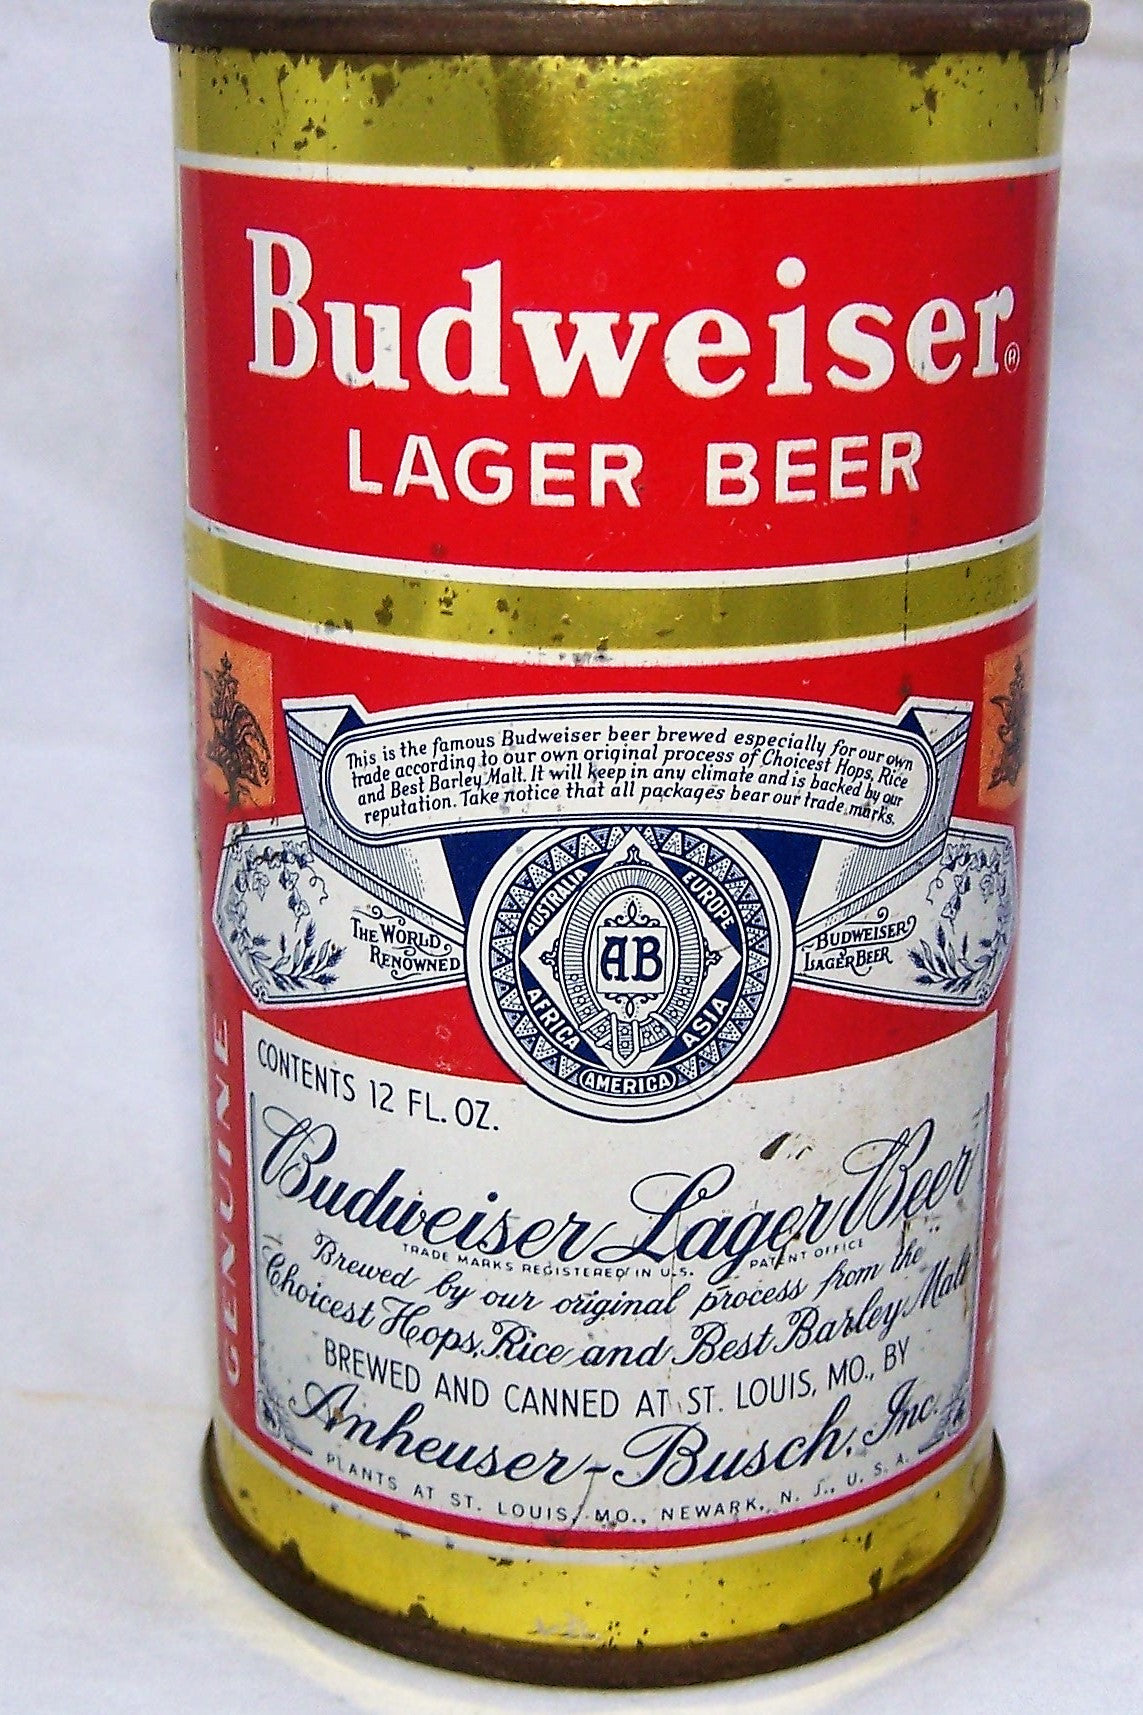 Budweiser Lager Beer, Grade 1-